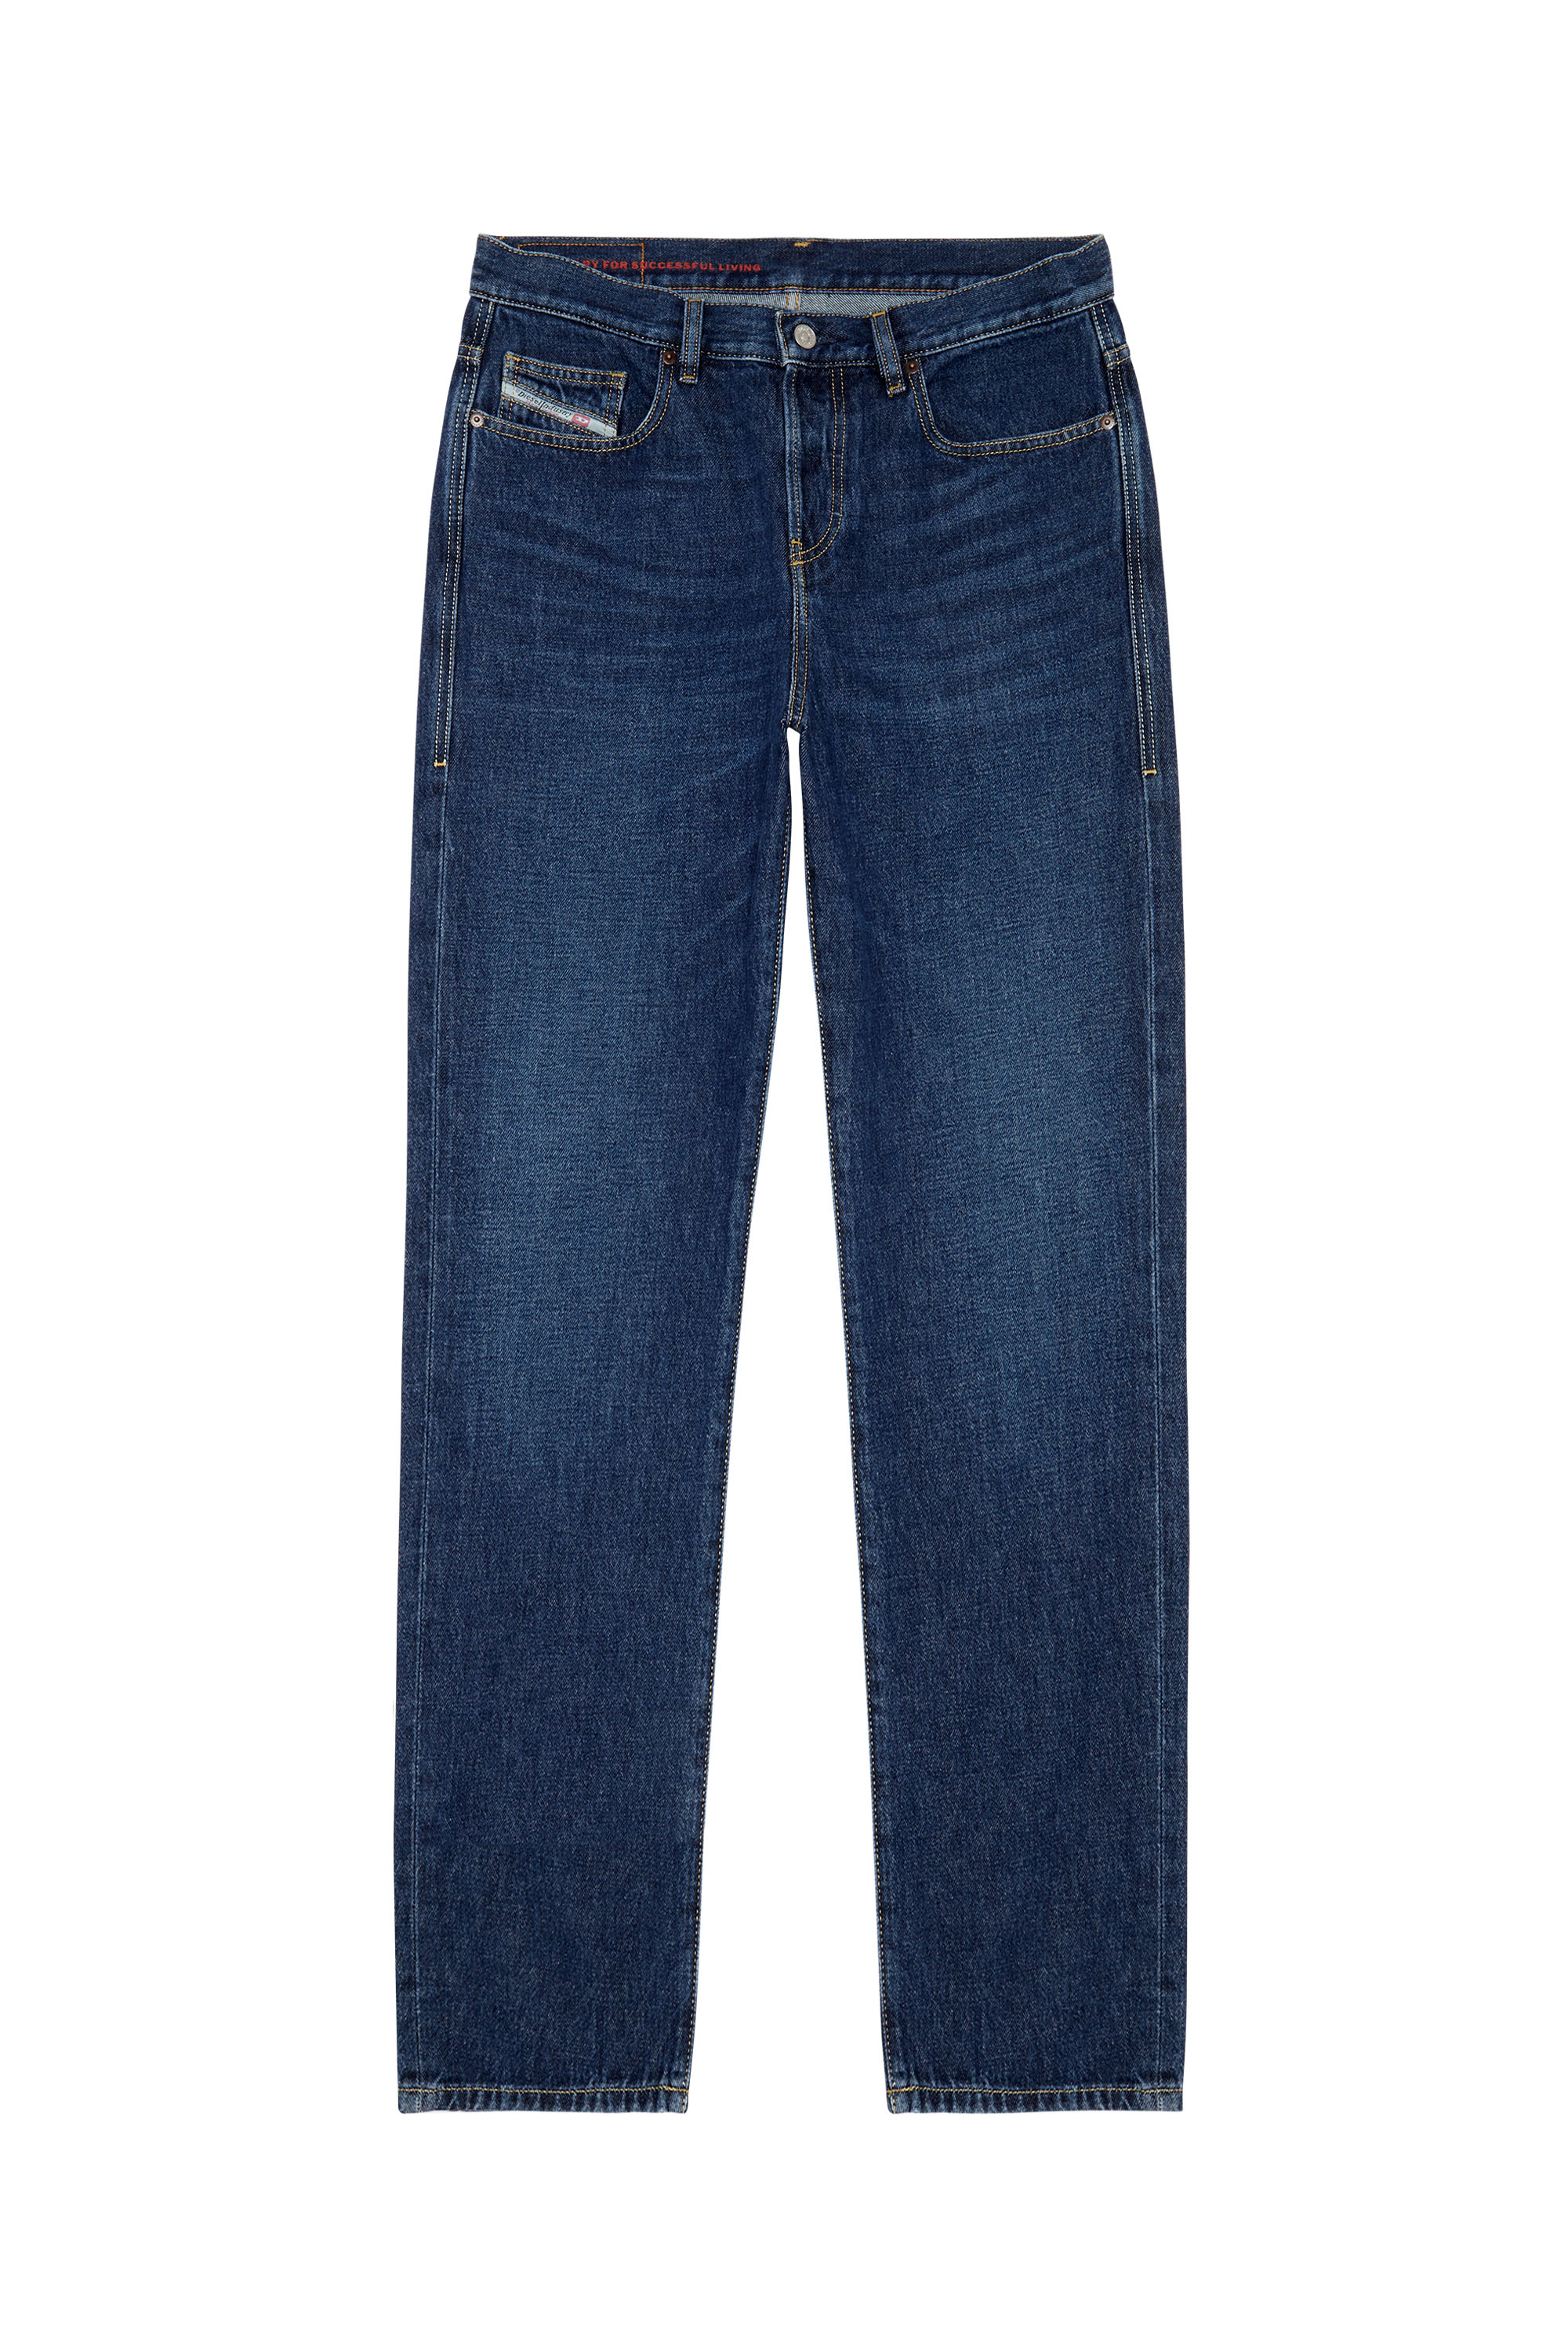 Straight Jeans 2020 D-Viker 09C03, Dunkelblau - Jeans